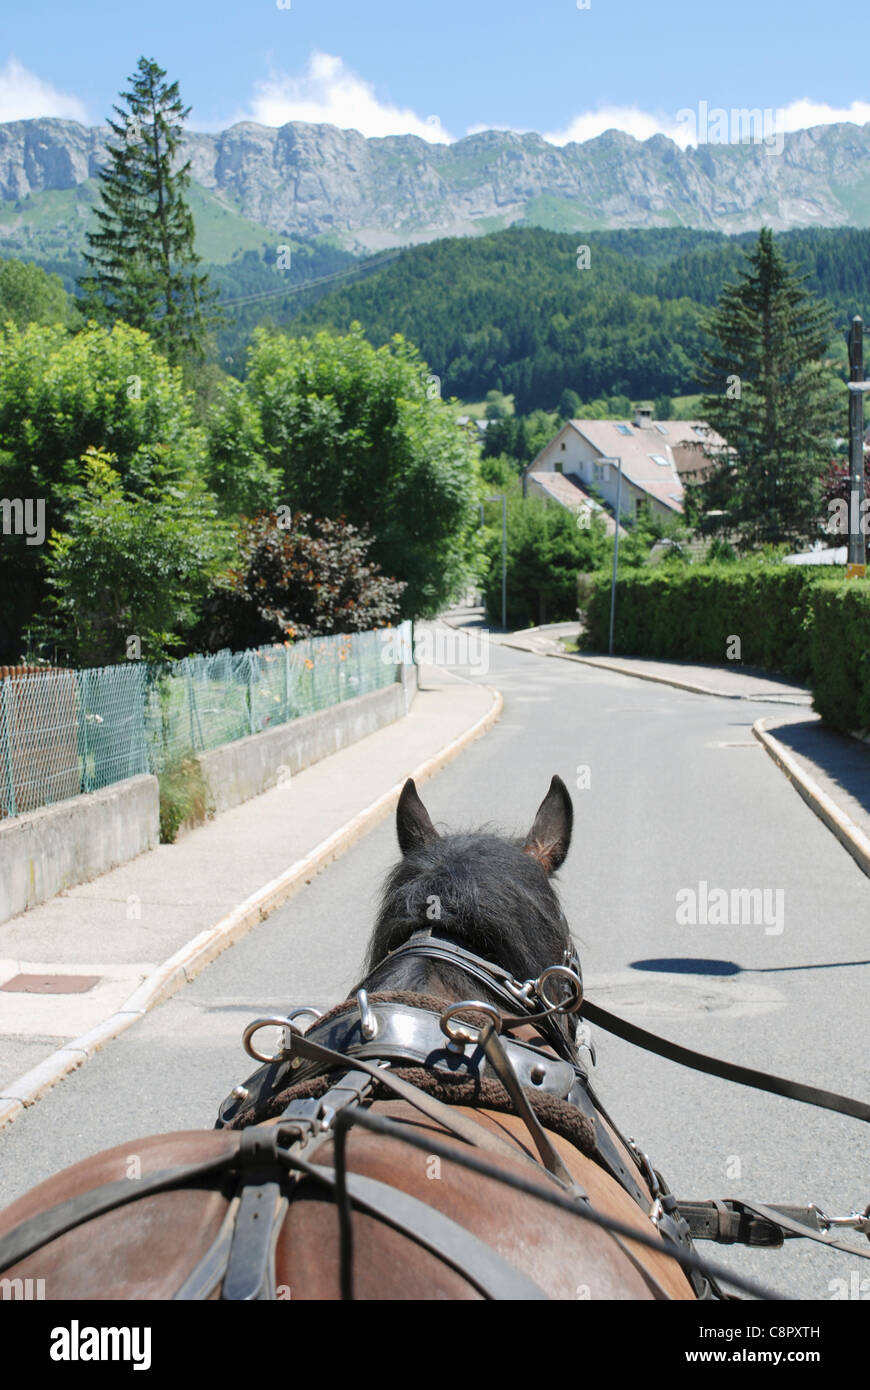 France, Rhône-Alpes, Villard-de-Lans, cheval tirant panier sur route dans les montagnes Banque D'Images